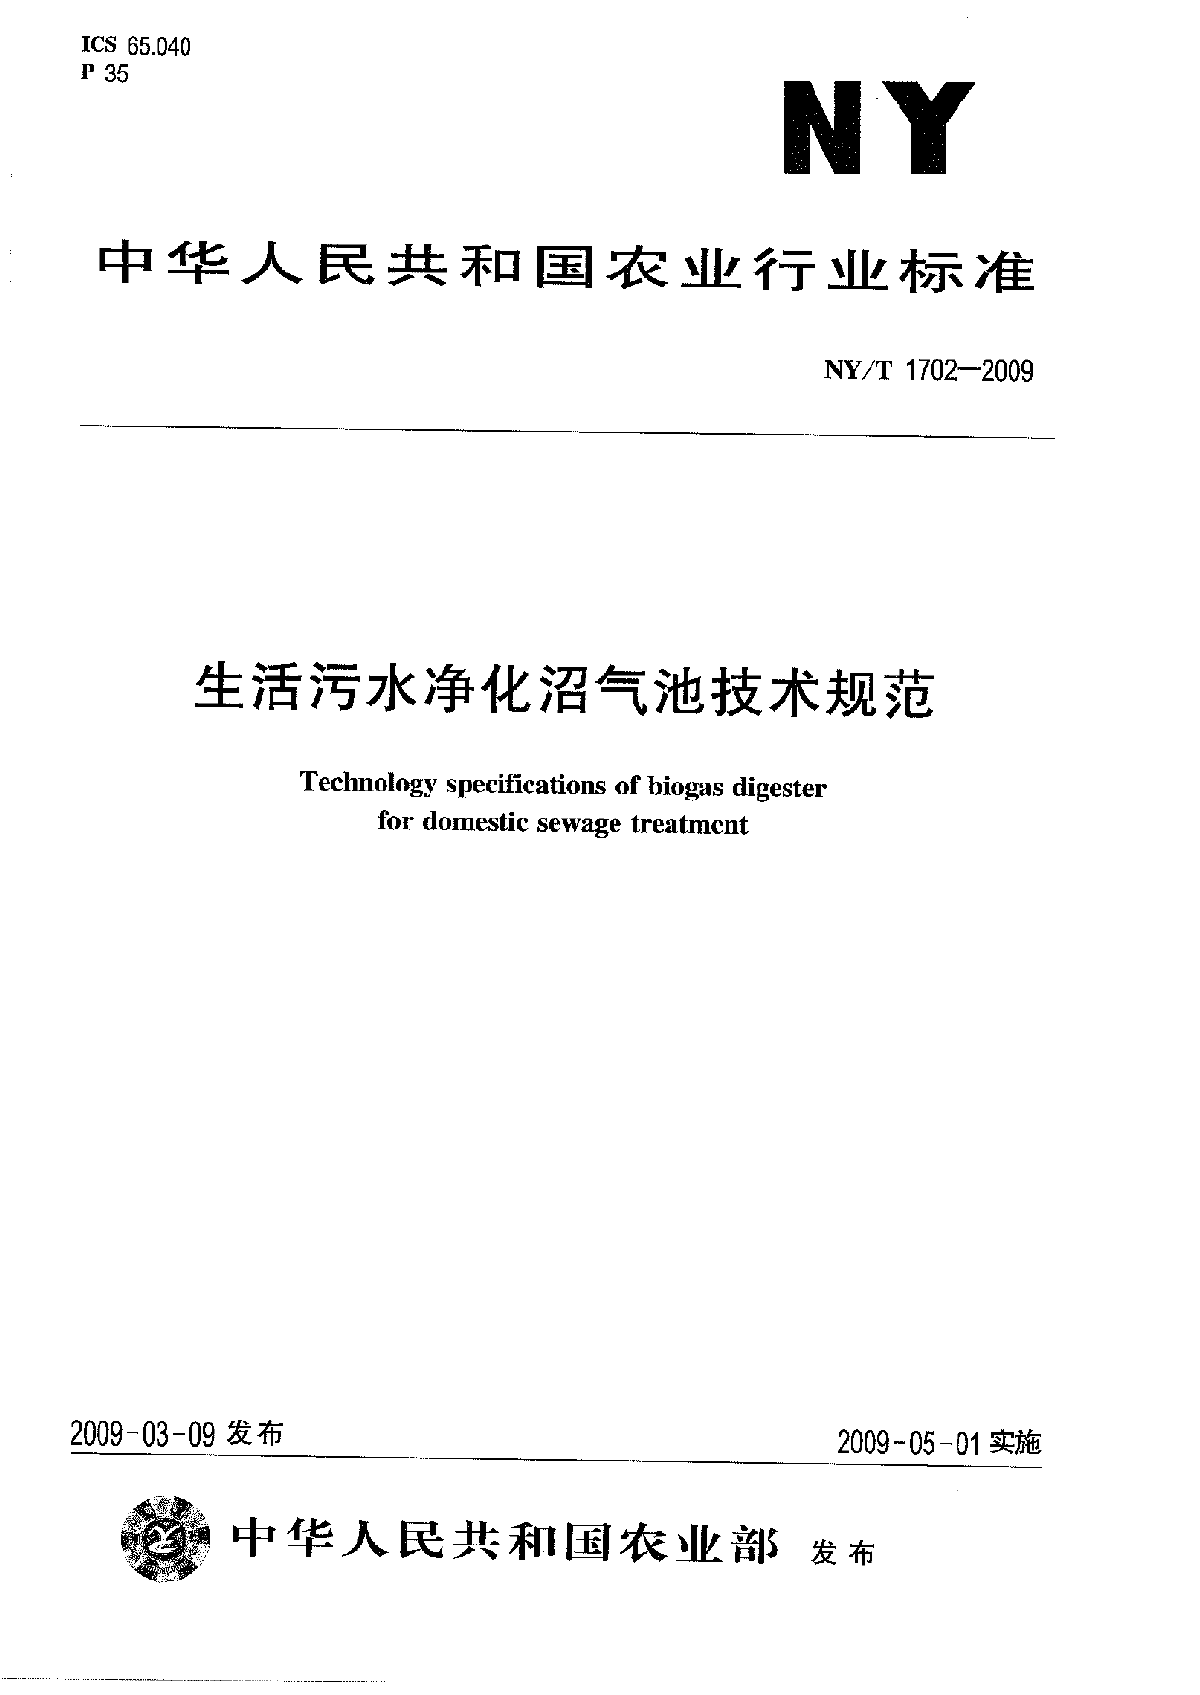 生活污水净化沼气池技术规范(NYT_1702-2009).pdf